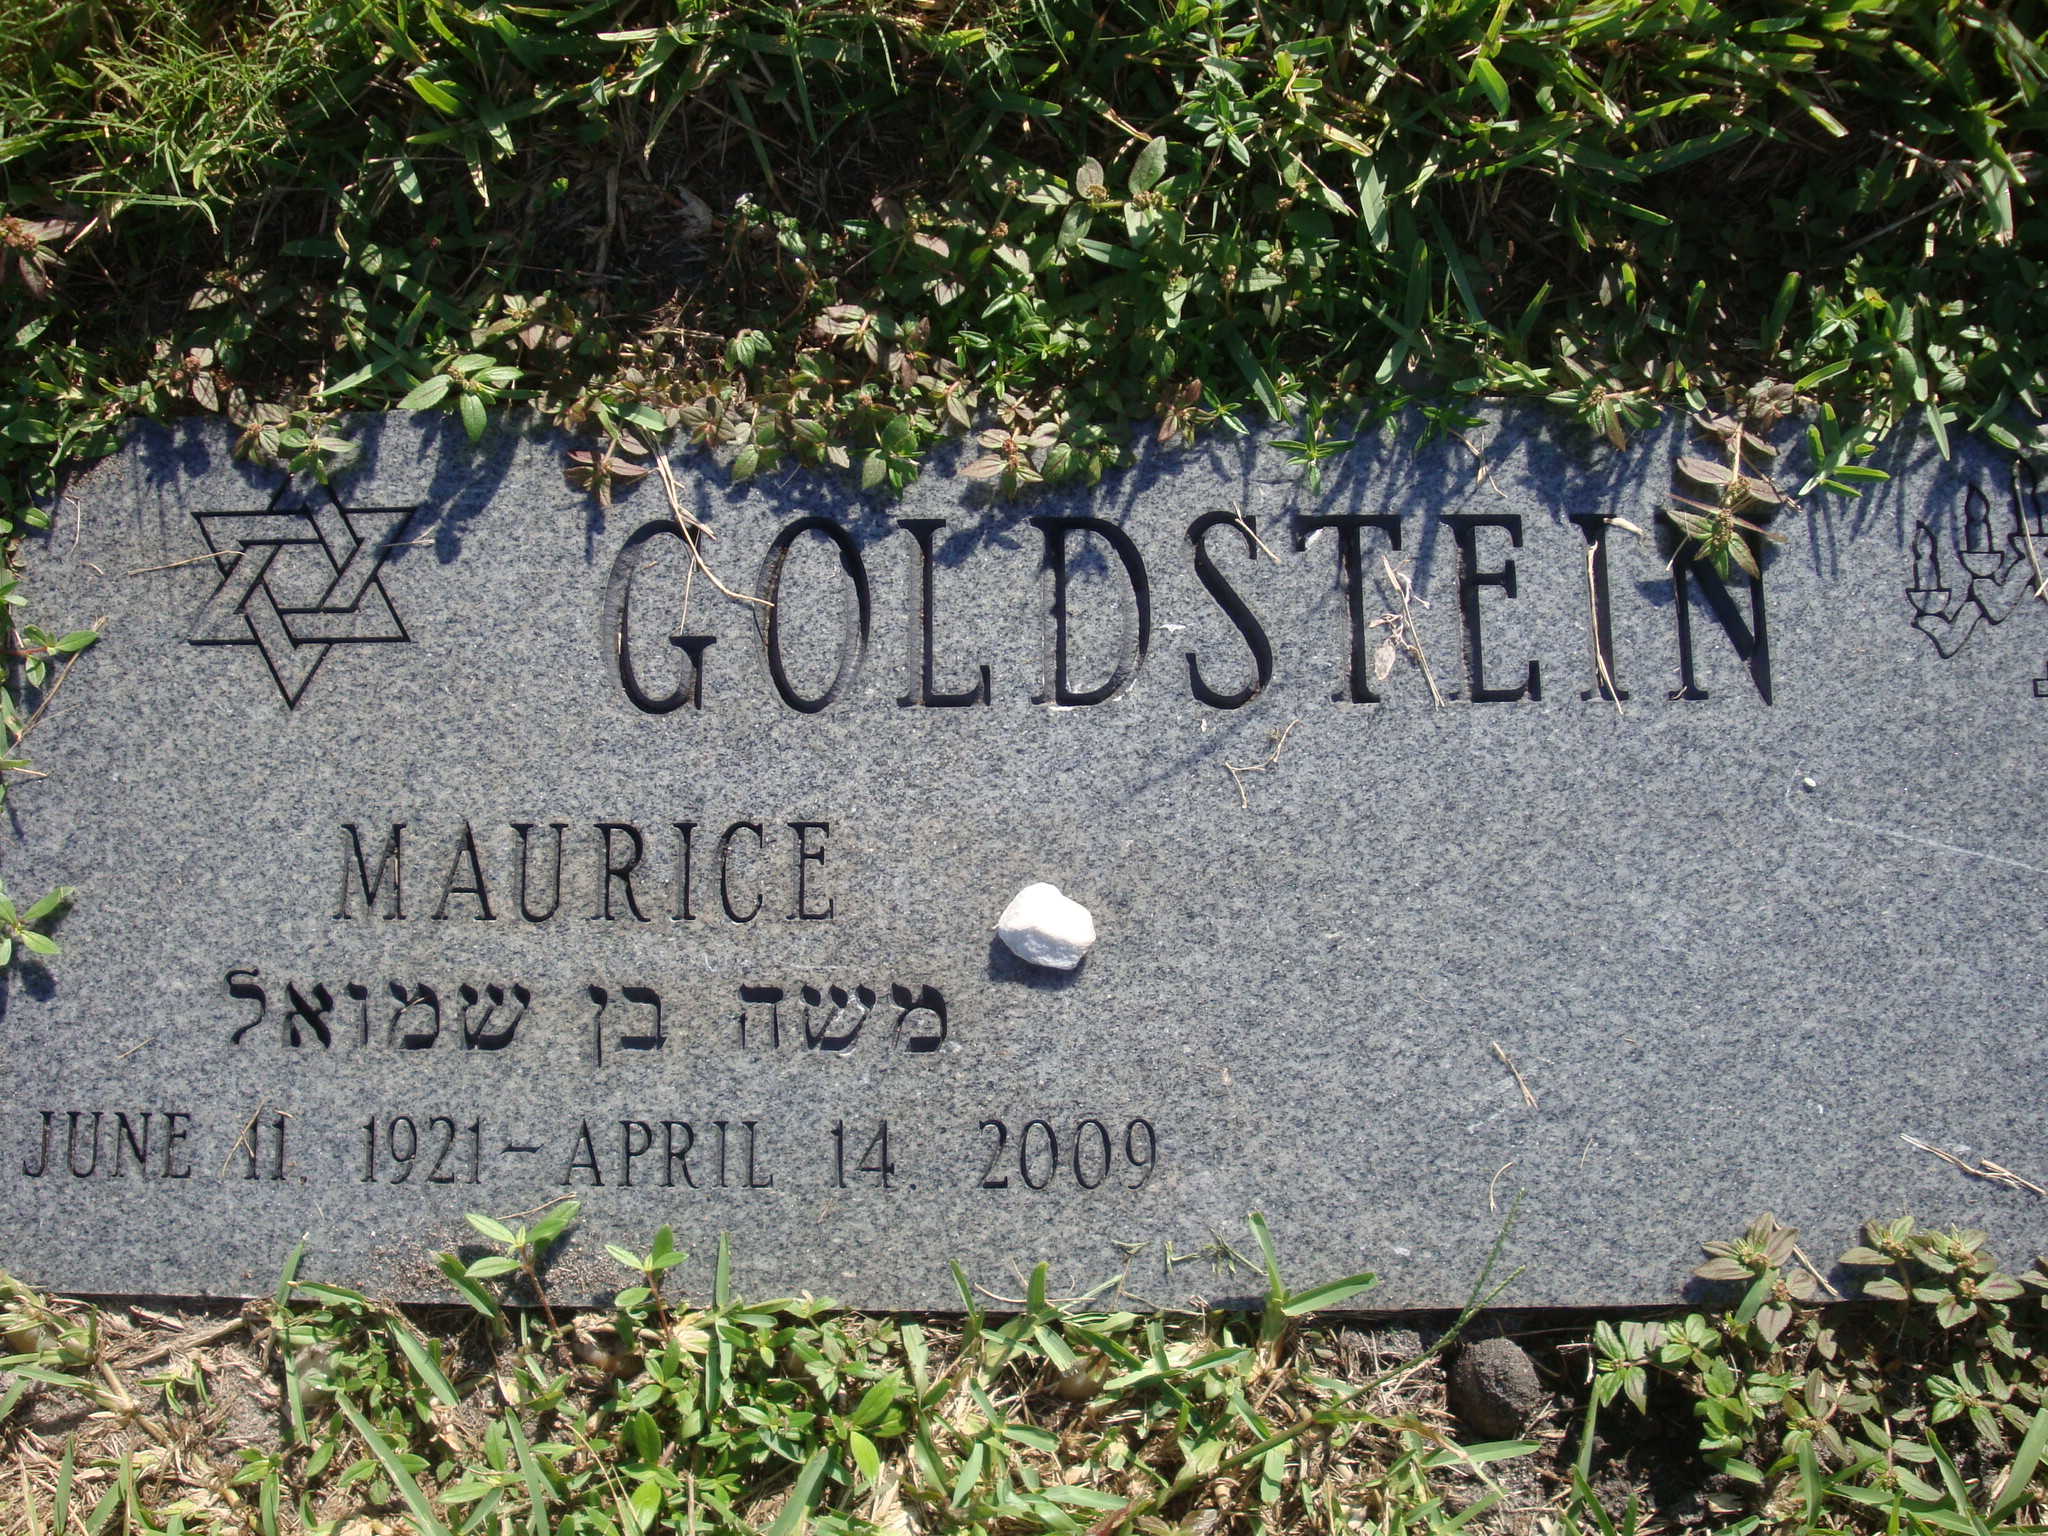 Maurice Goldstein